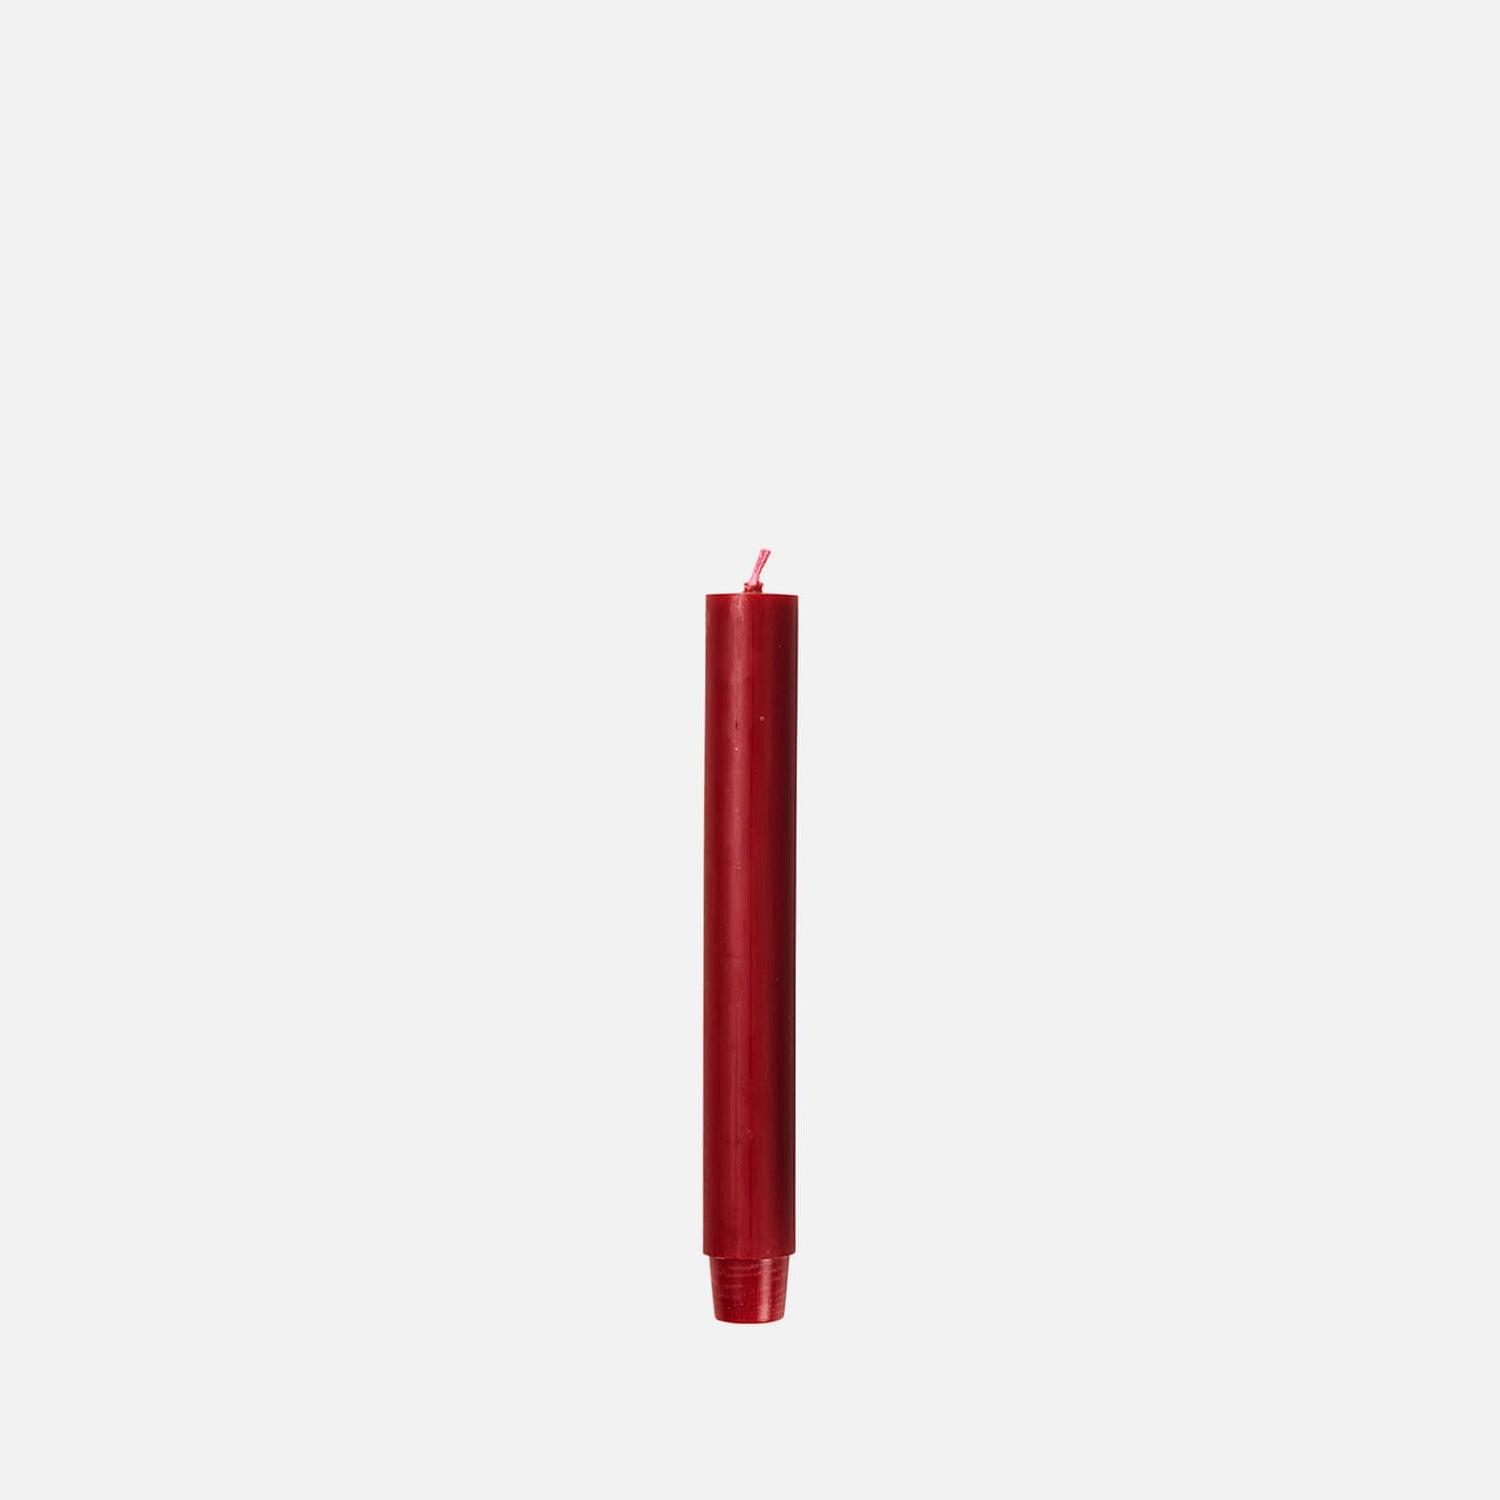 Broste Copenhagen Classic Rustic Candle - Red